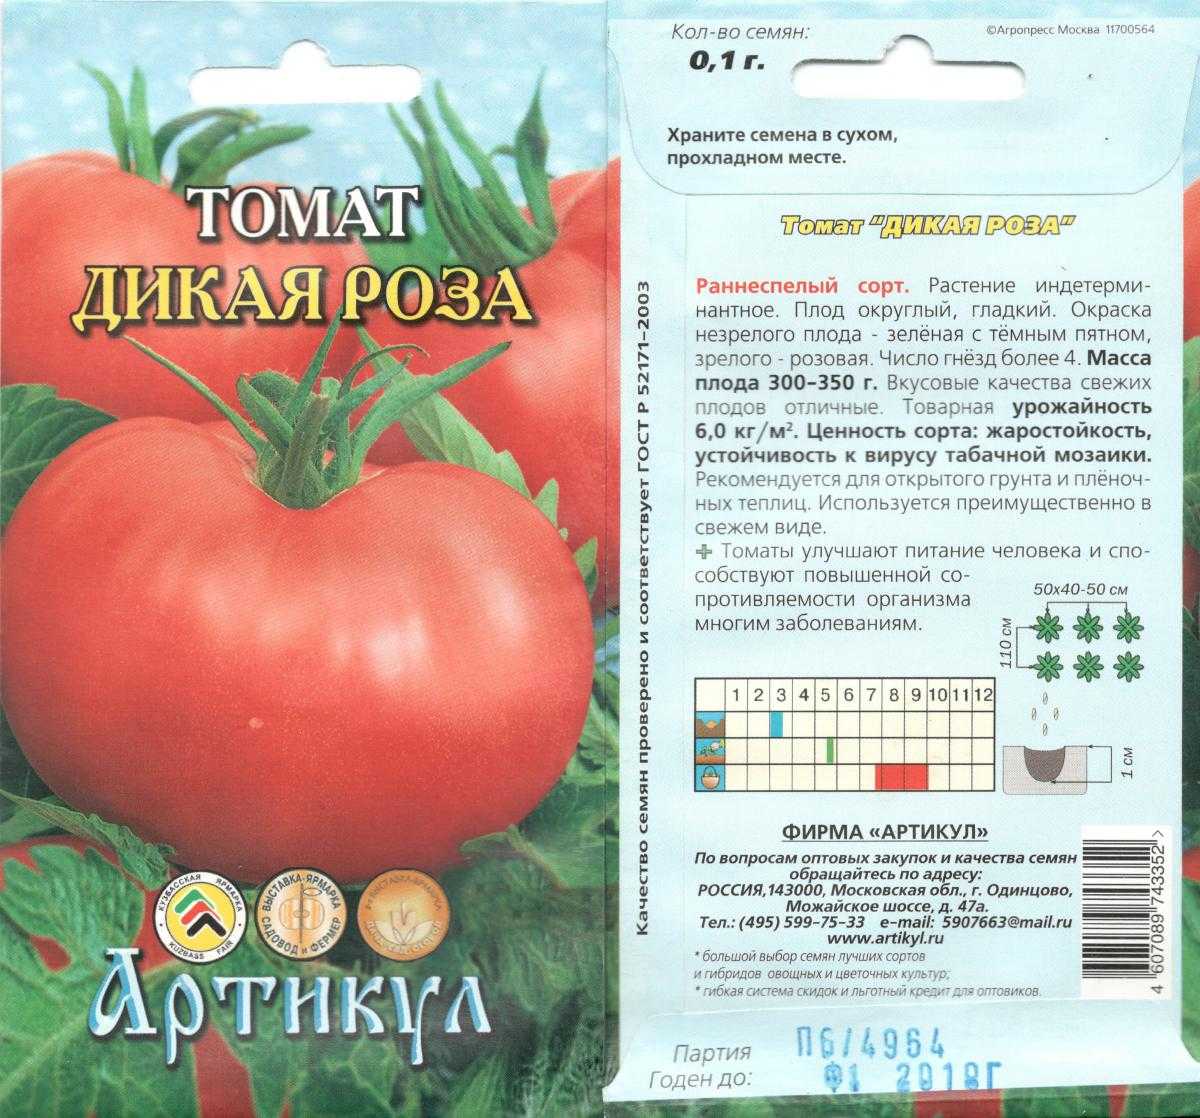 Томат "роза ветров": характеристика, описание сорта, советы по выращиванию отличного урожая помидор, фото-материалы